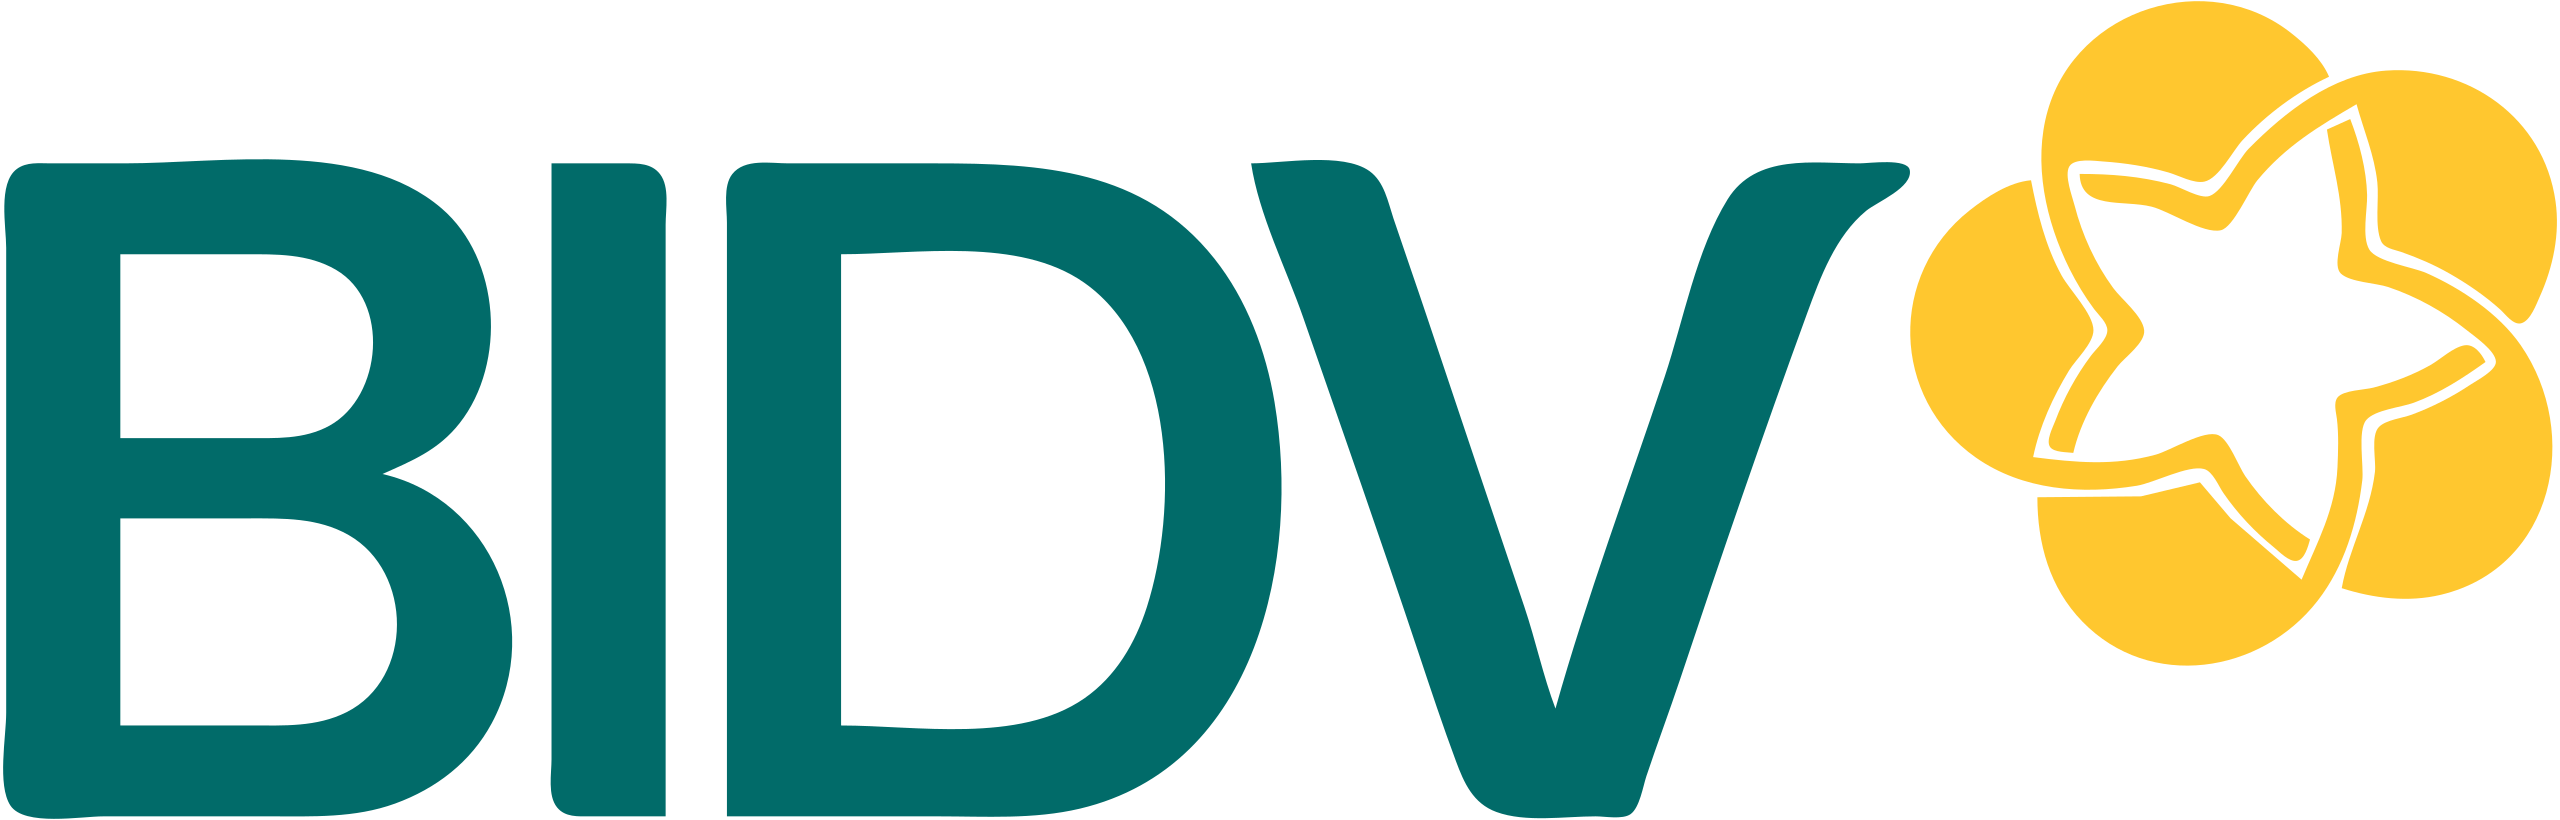 Logo_BIDV.svg